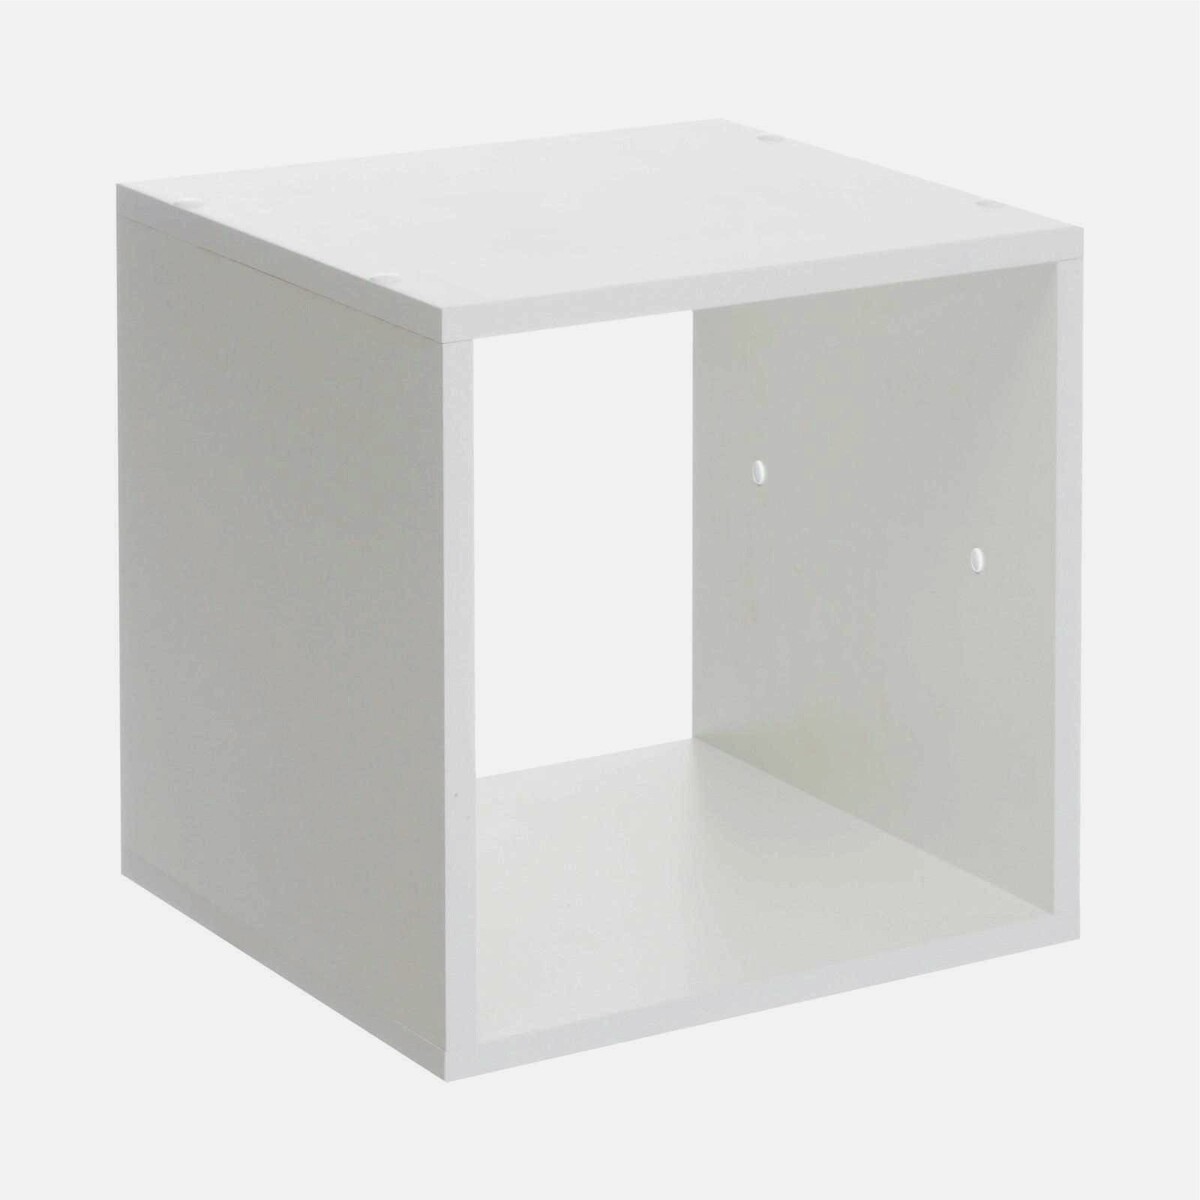 Стеллаж №1 dice cube 1 секция, 360х360х320, белый обогреватель engy en 2605 cube масляный напольный 1000 вт 5 секций белый